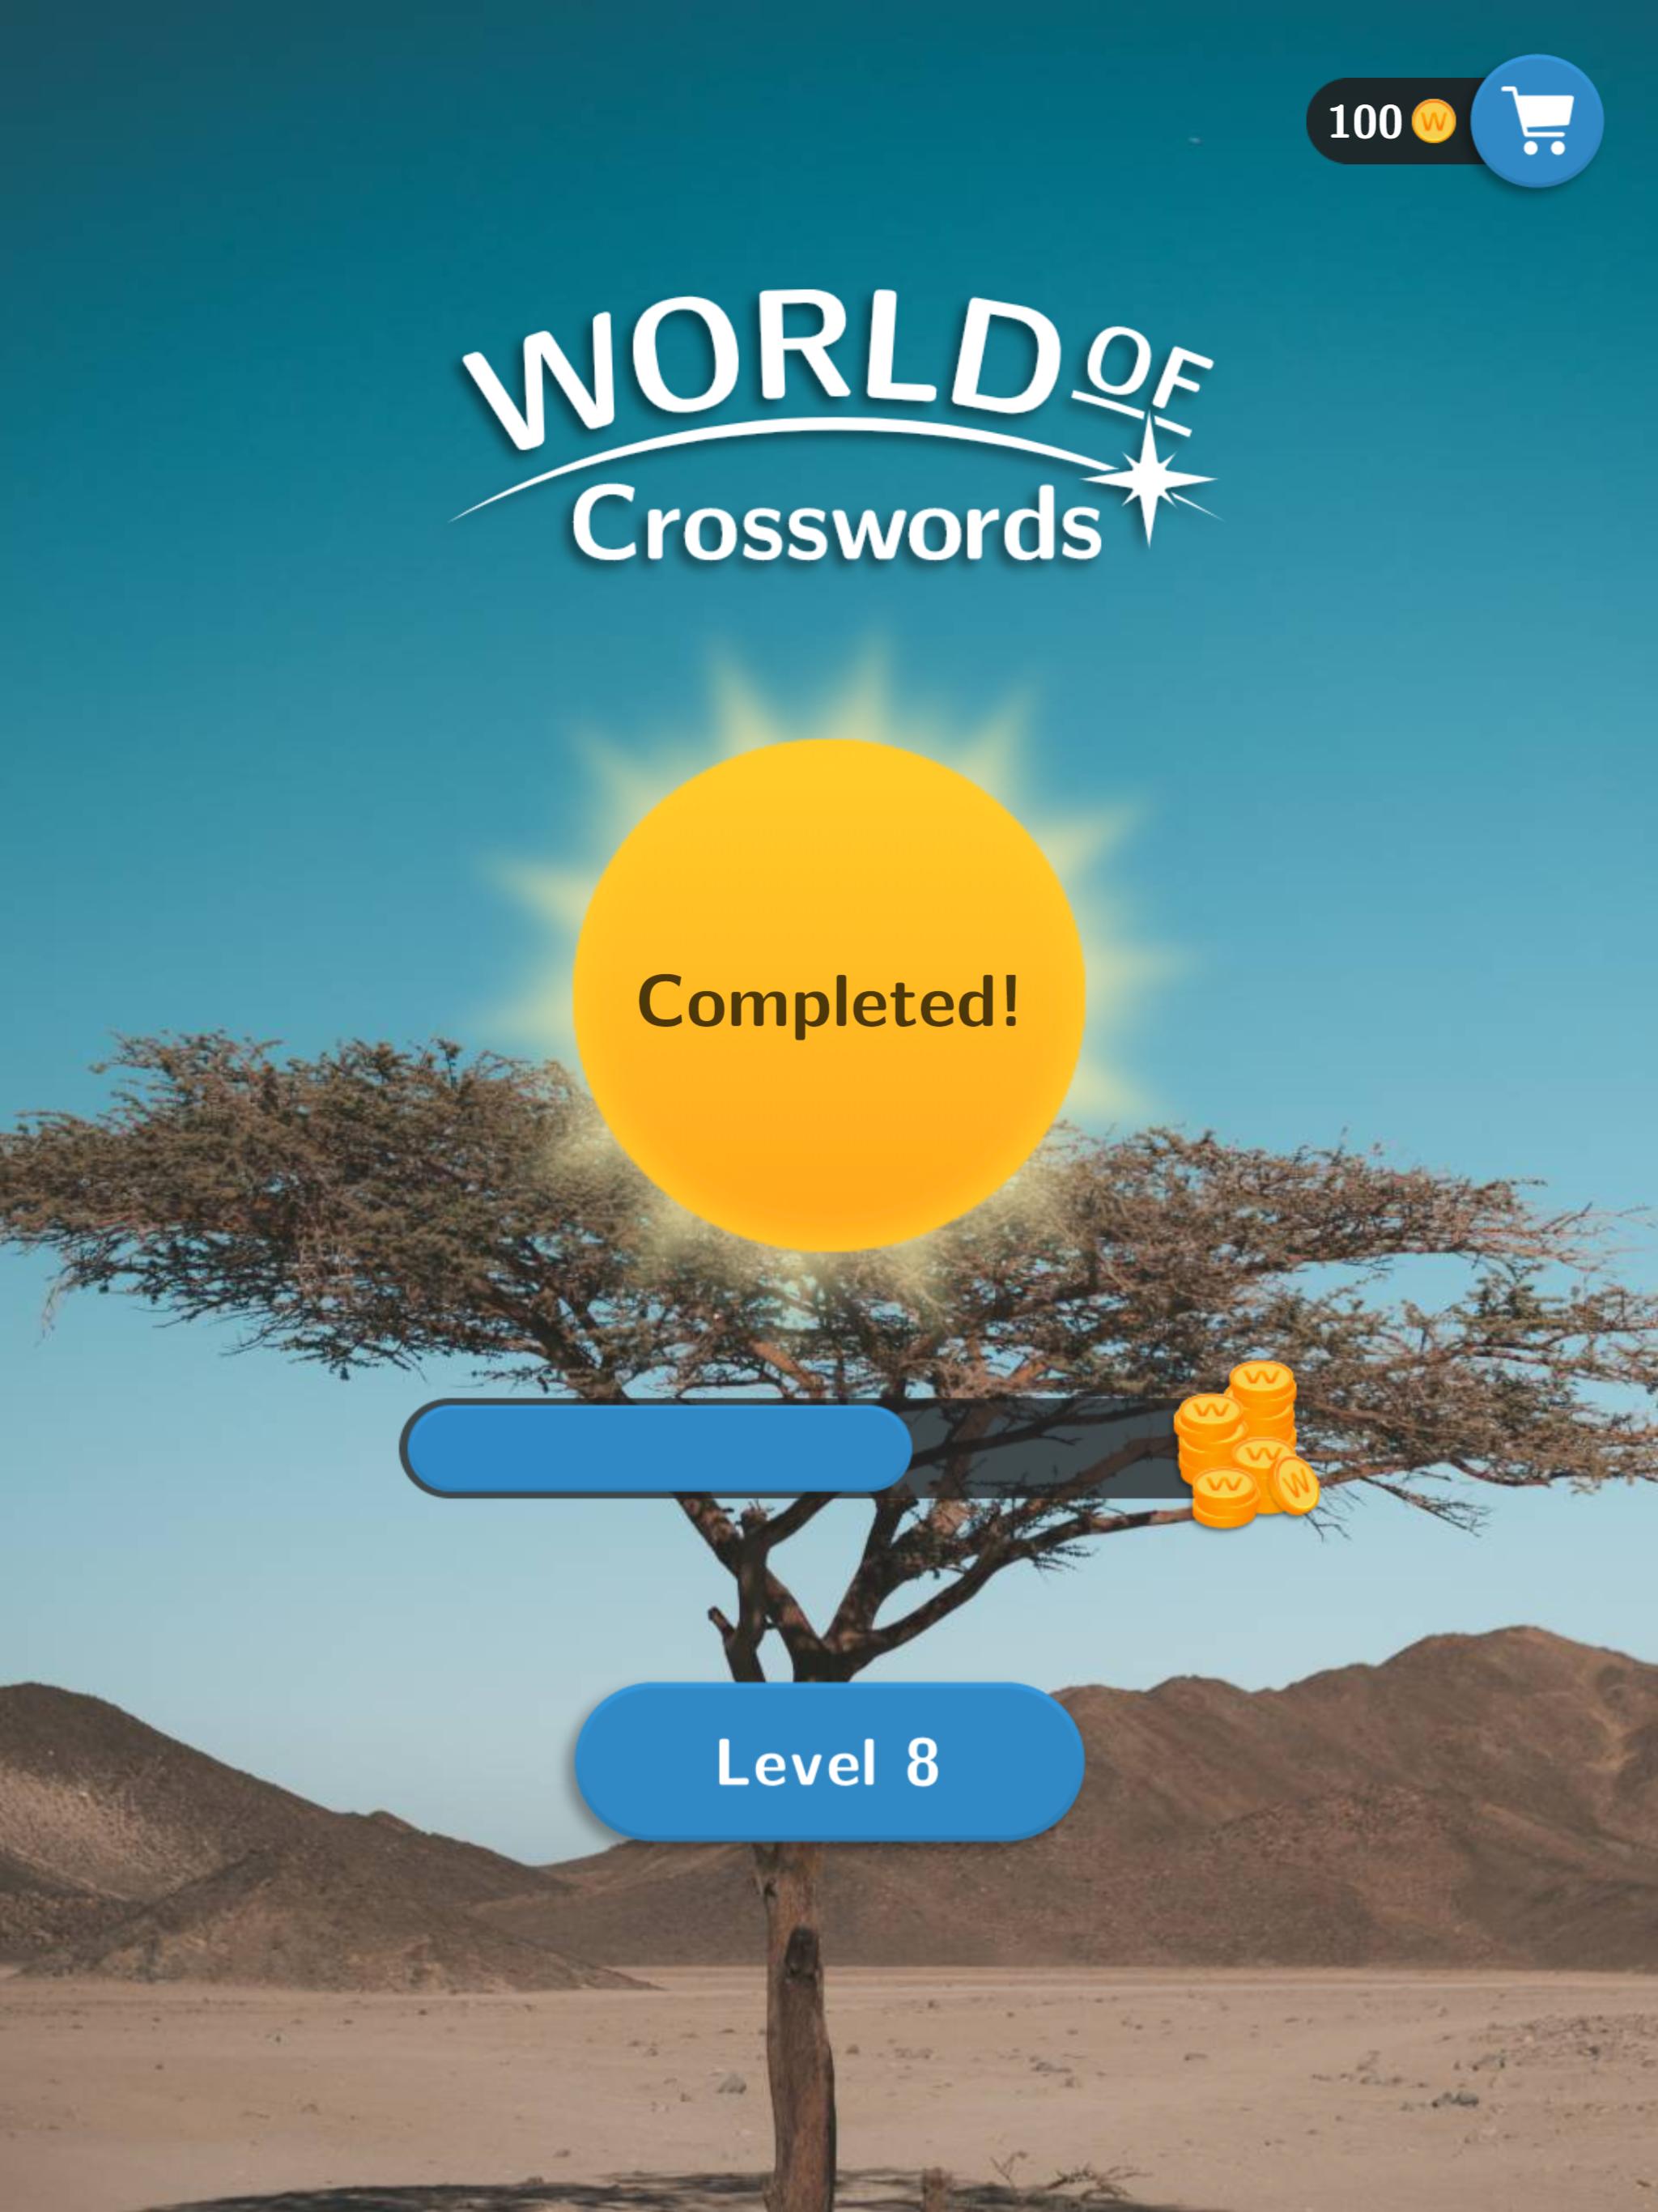 World of Crosswords 1.4.6 Screenshot 15